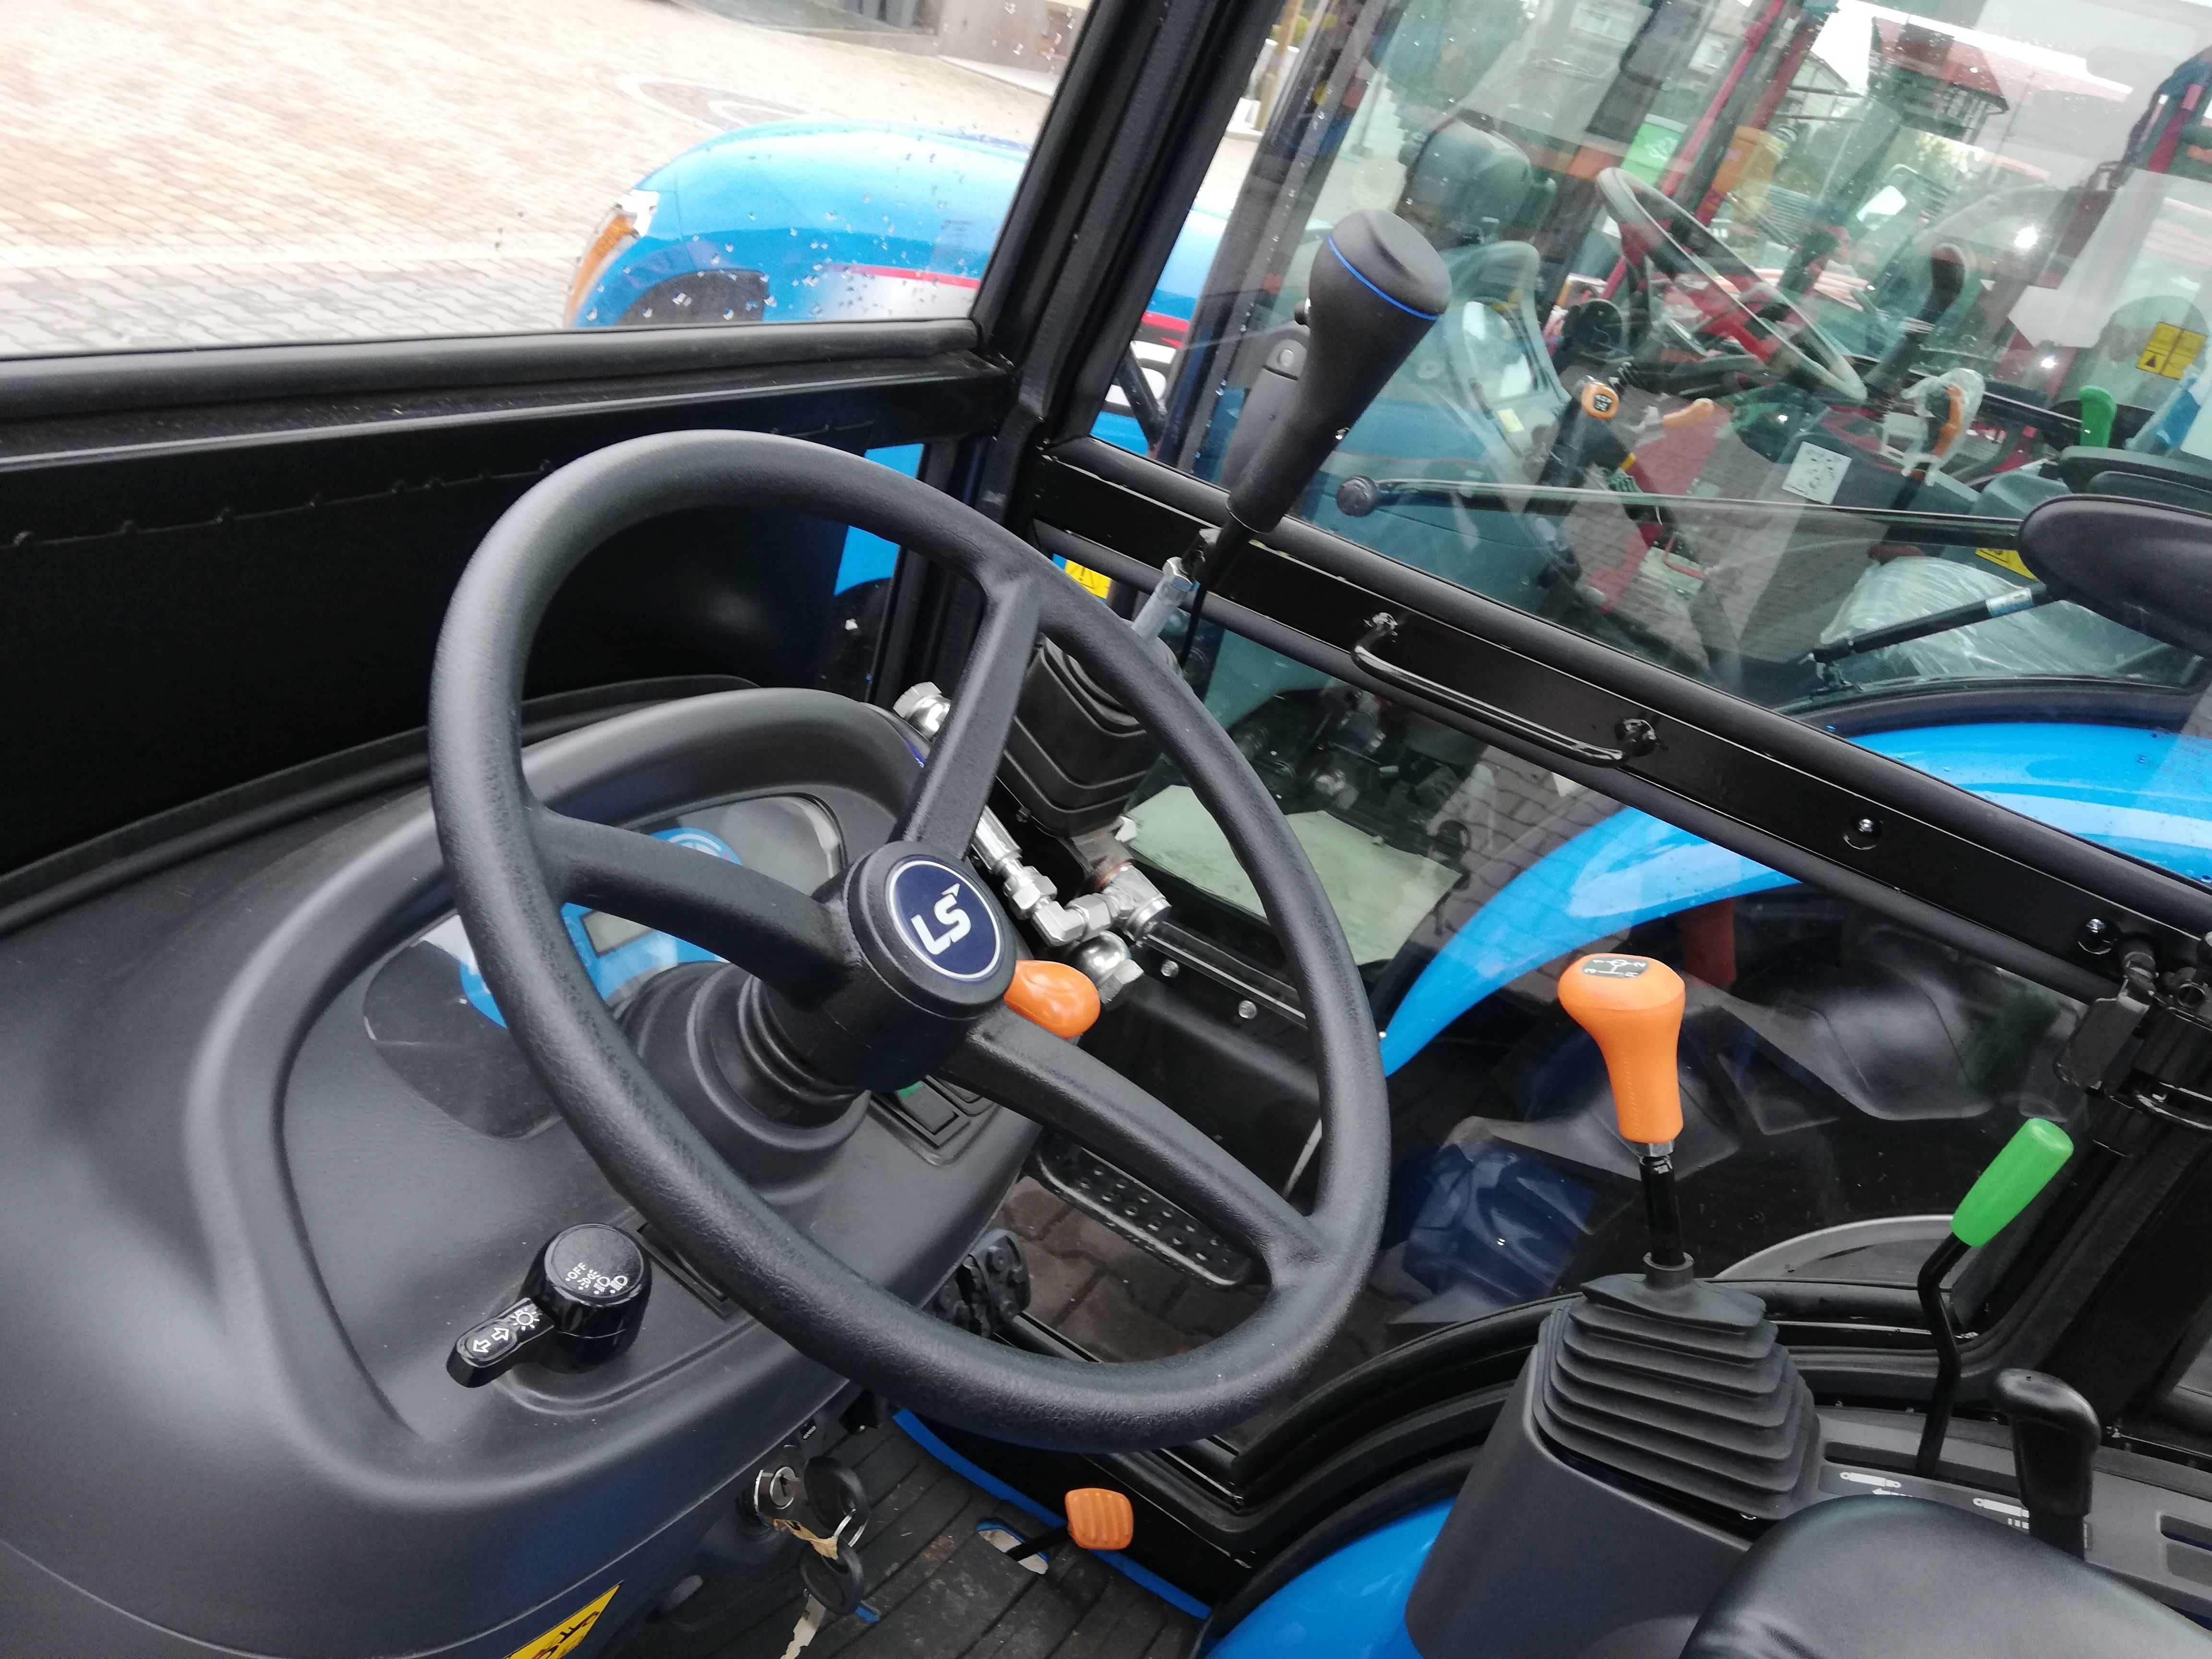 Nowy Traktor traktorek ciągnik komunalny LS Mitsubishi 24,4 KM kabina ogrzewana, pług strzałka 150 cm, solarka, WOM, raty, dotacja, gwarancja 5 lat